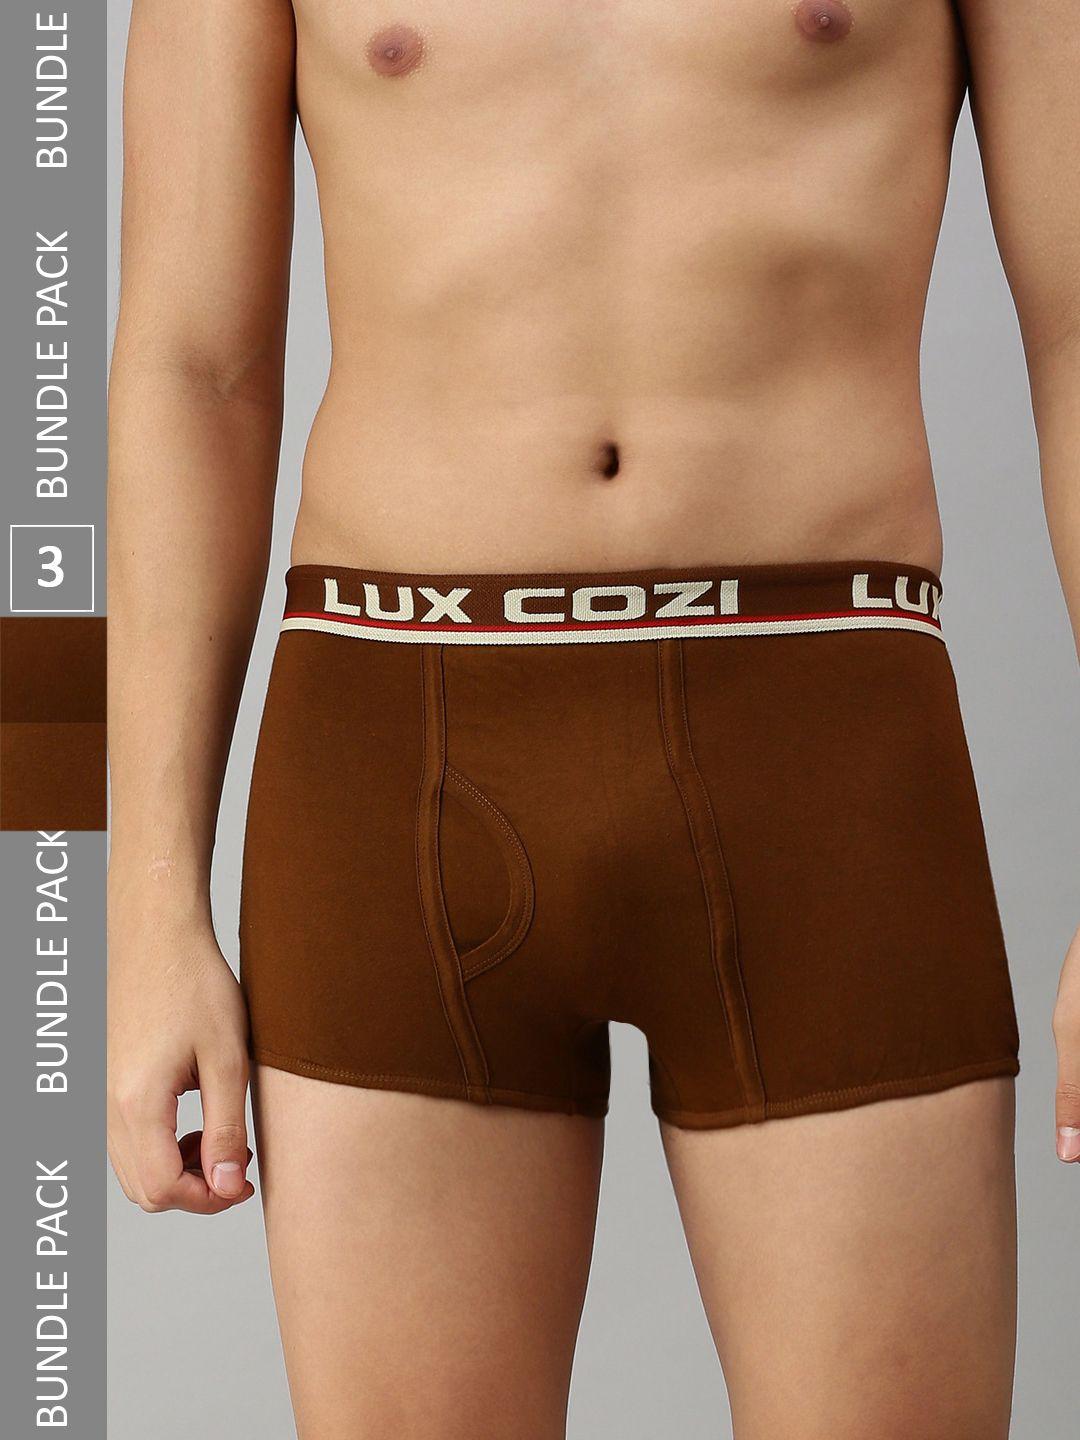 lux cozi men pack of 3 trunks- cozi_bigshot_slp_mst_3pc